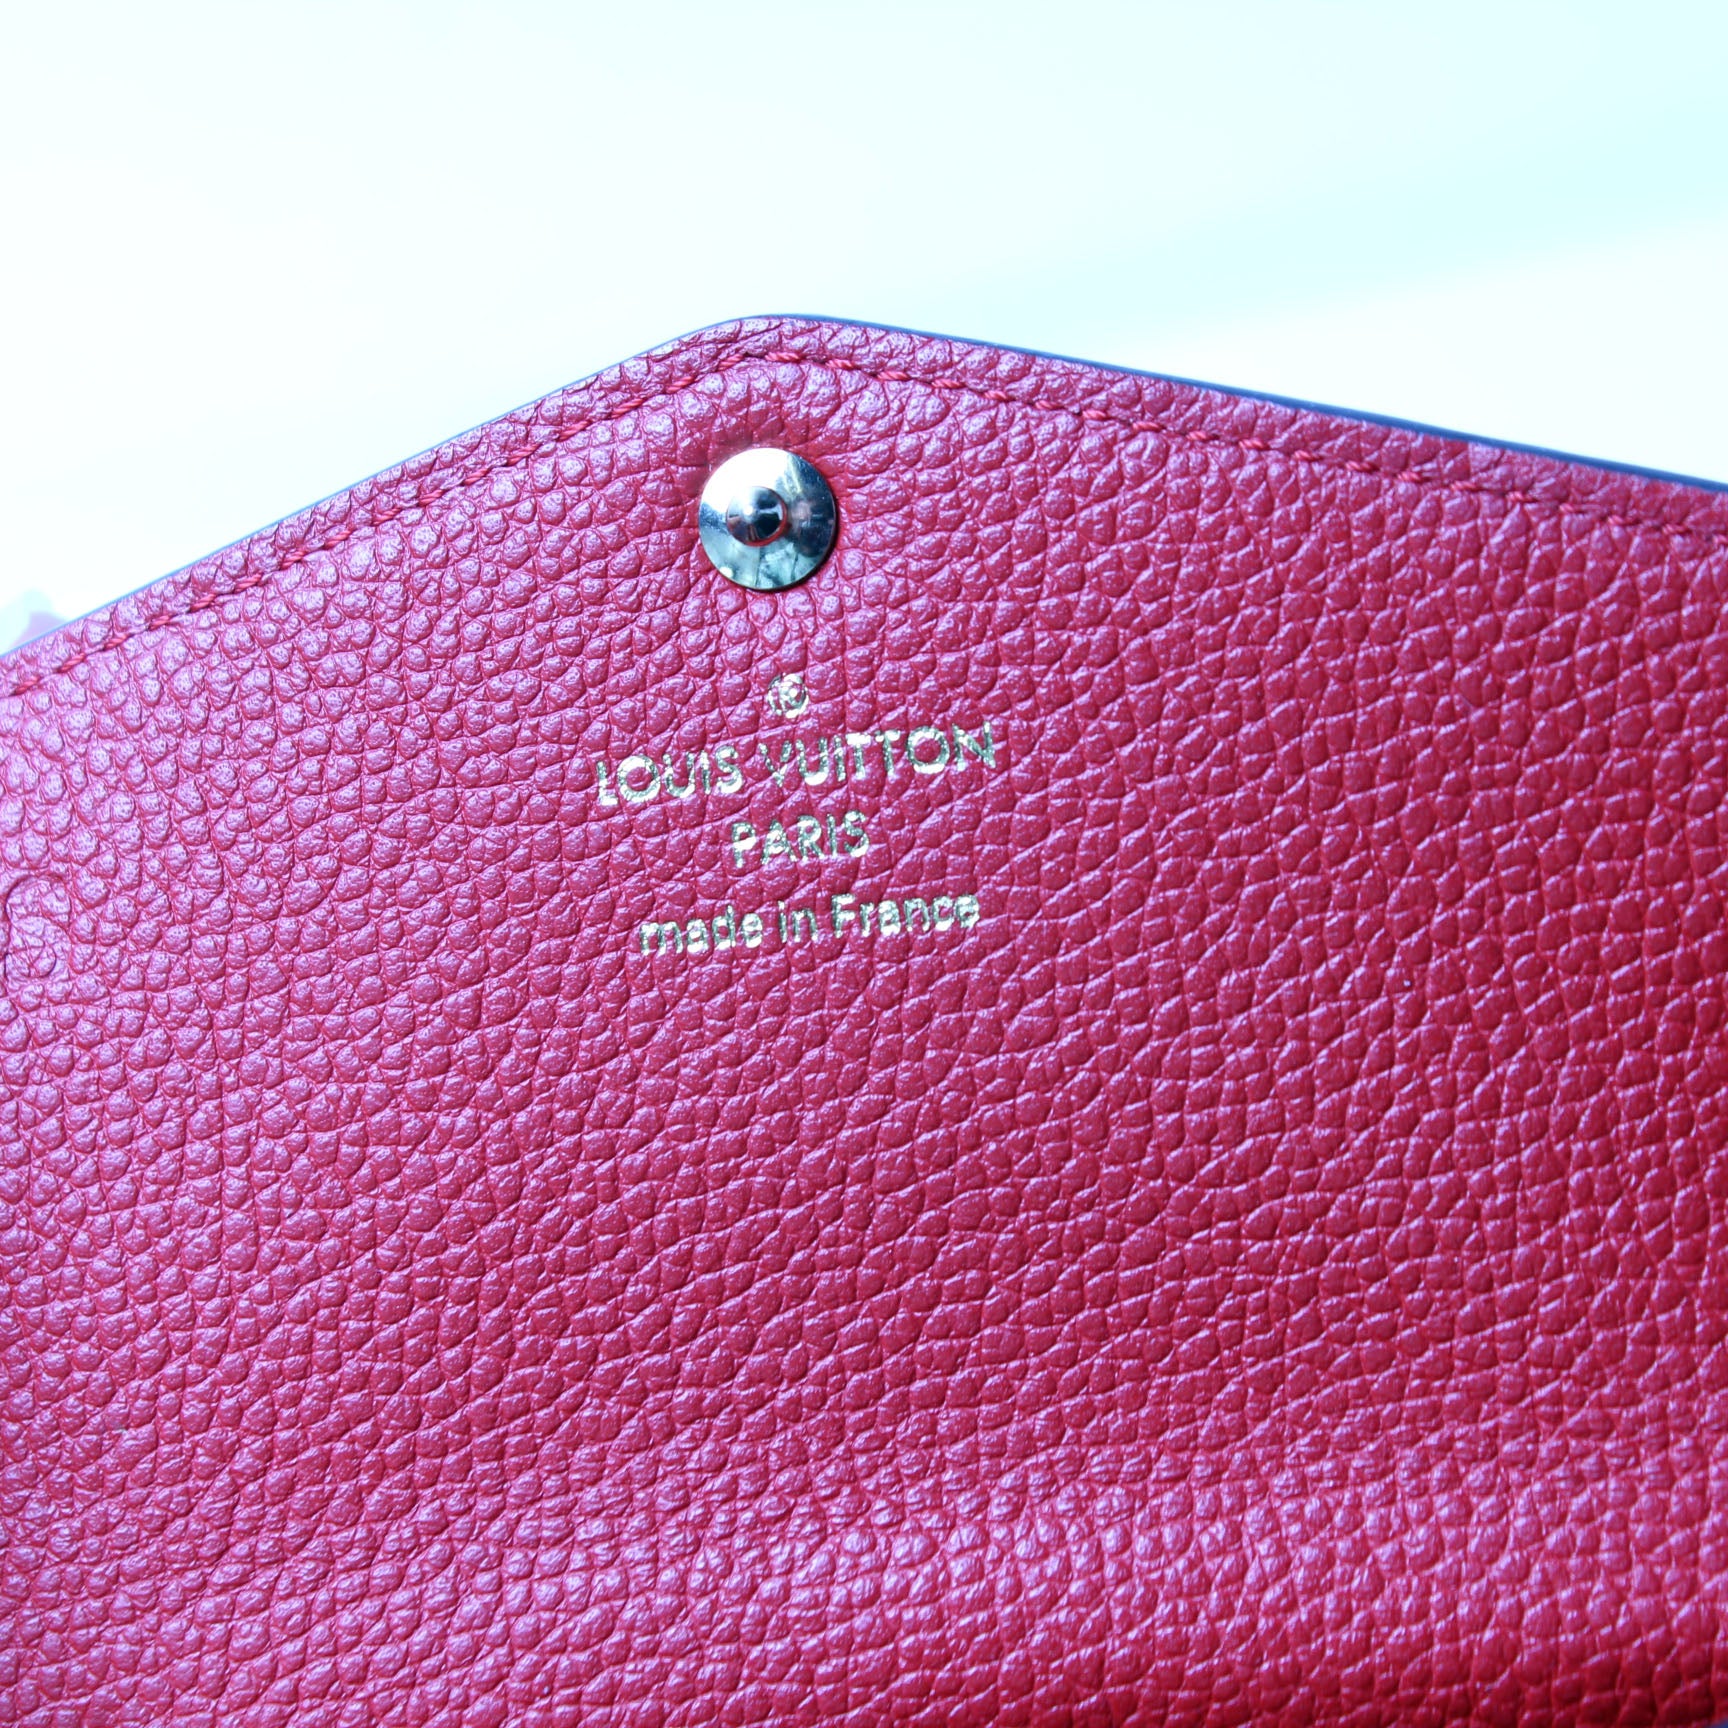 Louis Vuitton 2015 Empreinte Key Pouch - Red Wallets, Accessories -  LOU134861